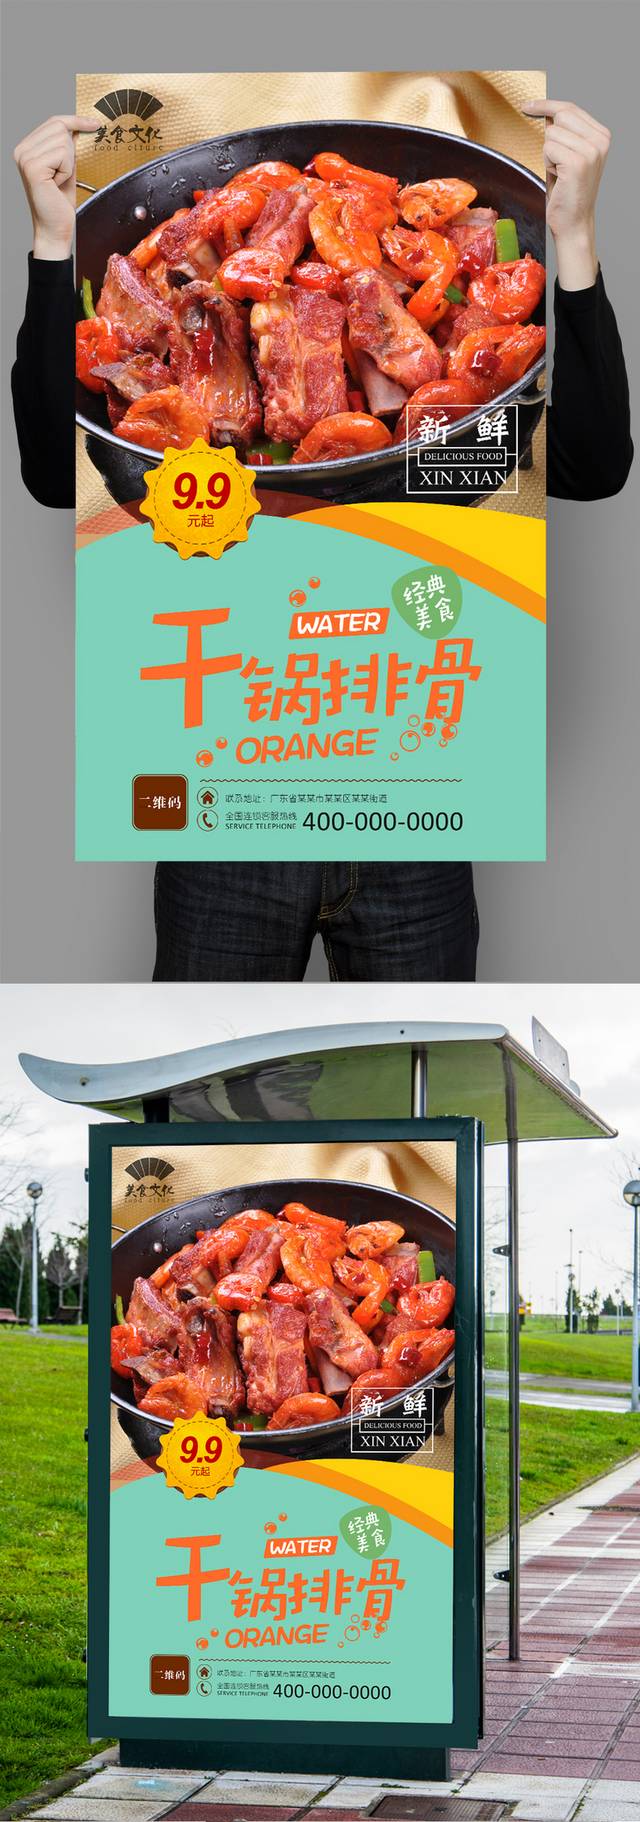 干锅排骨宣传海报设计